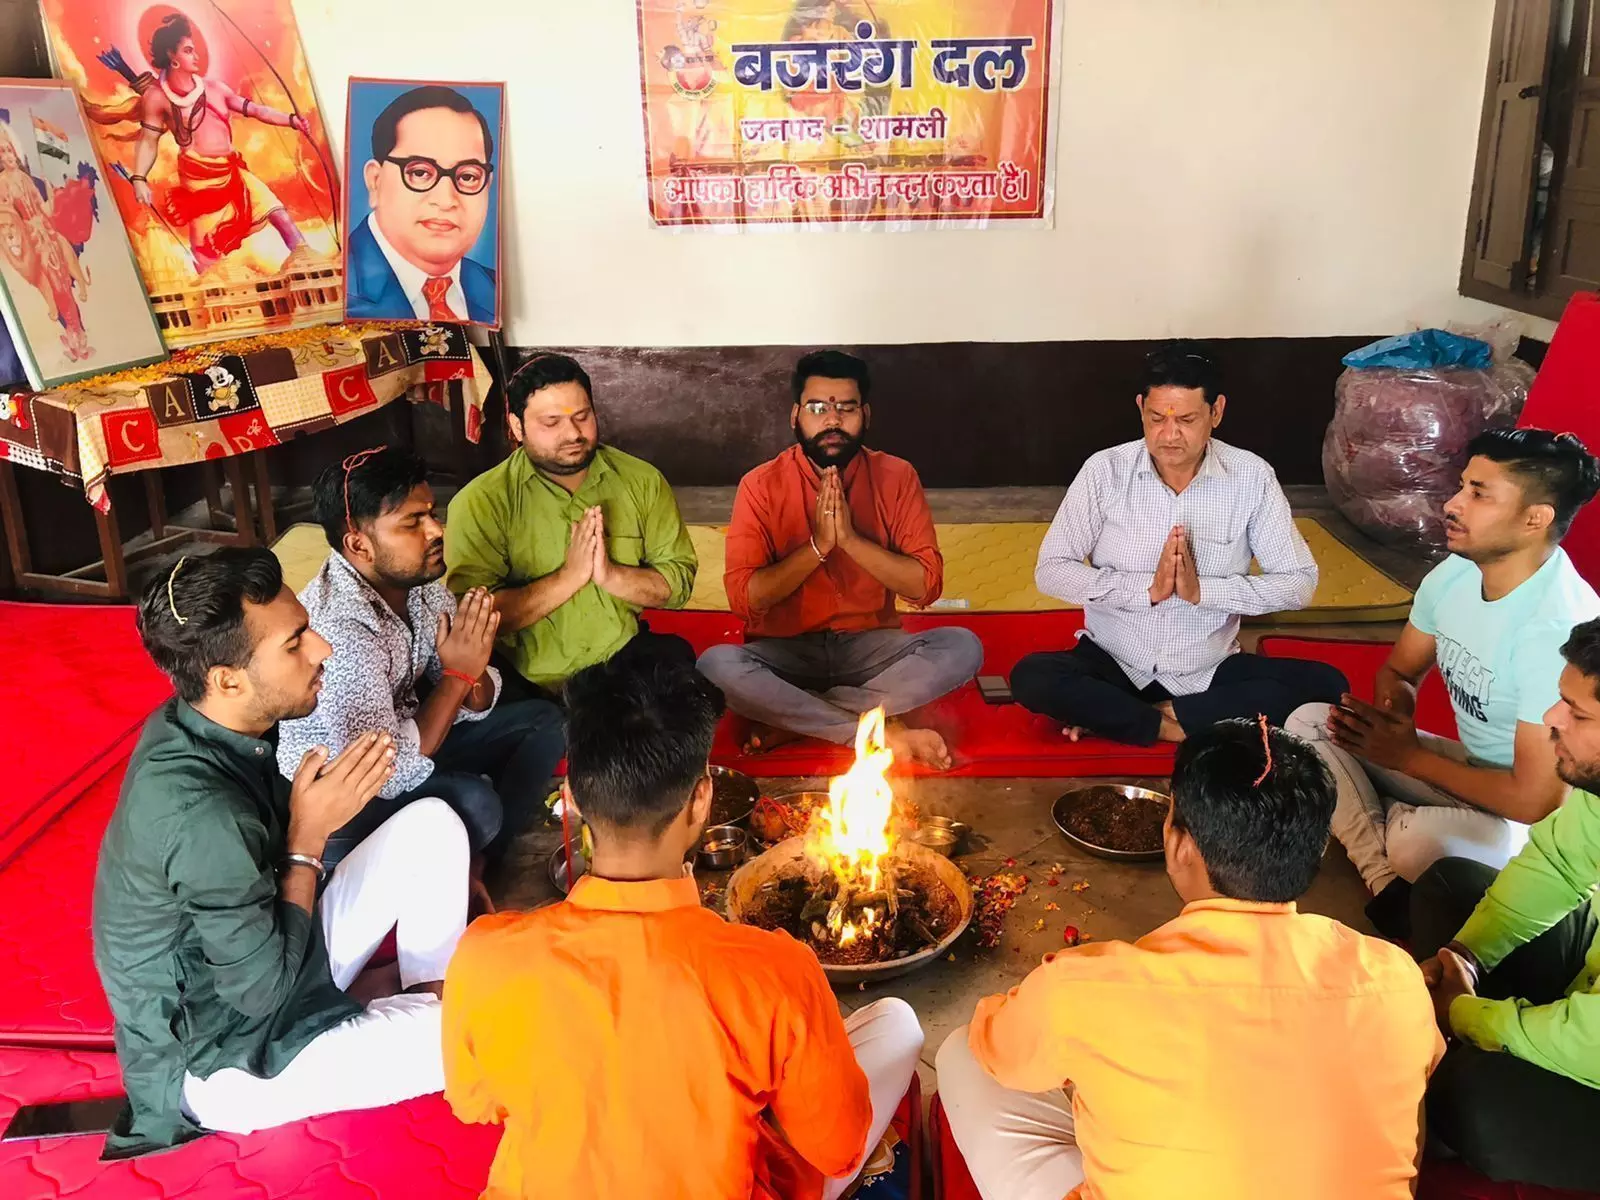 Hindu New Year: बजरंग दल के कार्यकर्ताओं ने हिंदू नव वर्ष पर देश की शांति के लिए किया हवन यज्ञ